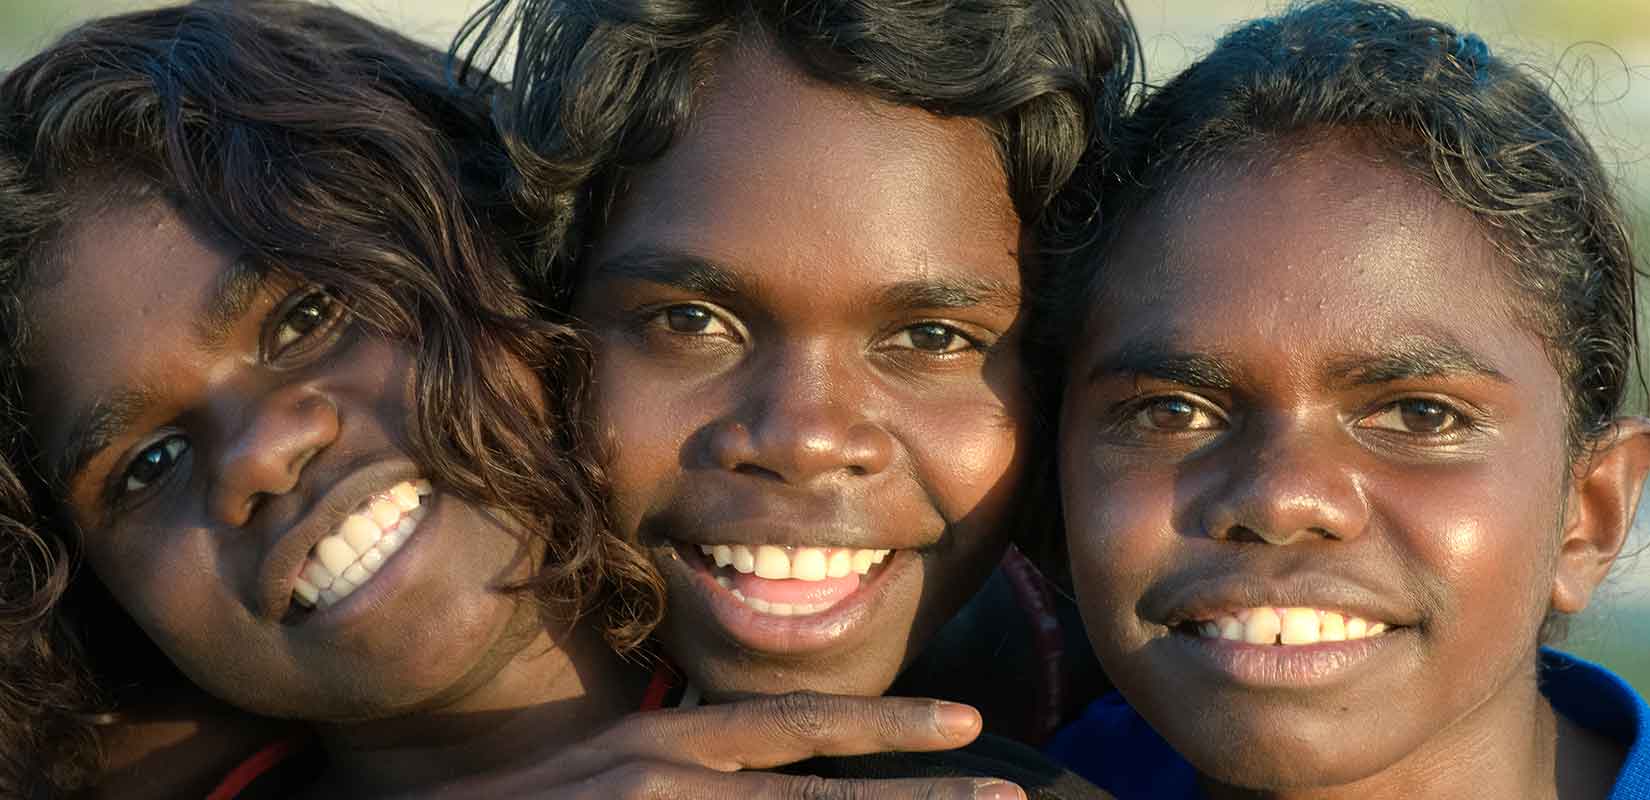 Люди австралоидной расы. Австралоиды океанийская раса. Австралоиды (аборигены Австралии). Меланезийская раса австралоидная. Экваториальная раса (Негро-австралоидная).